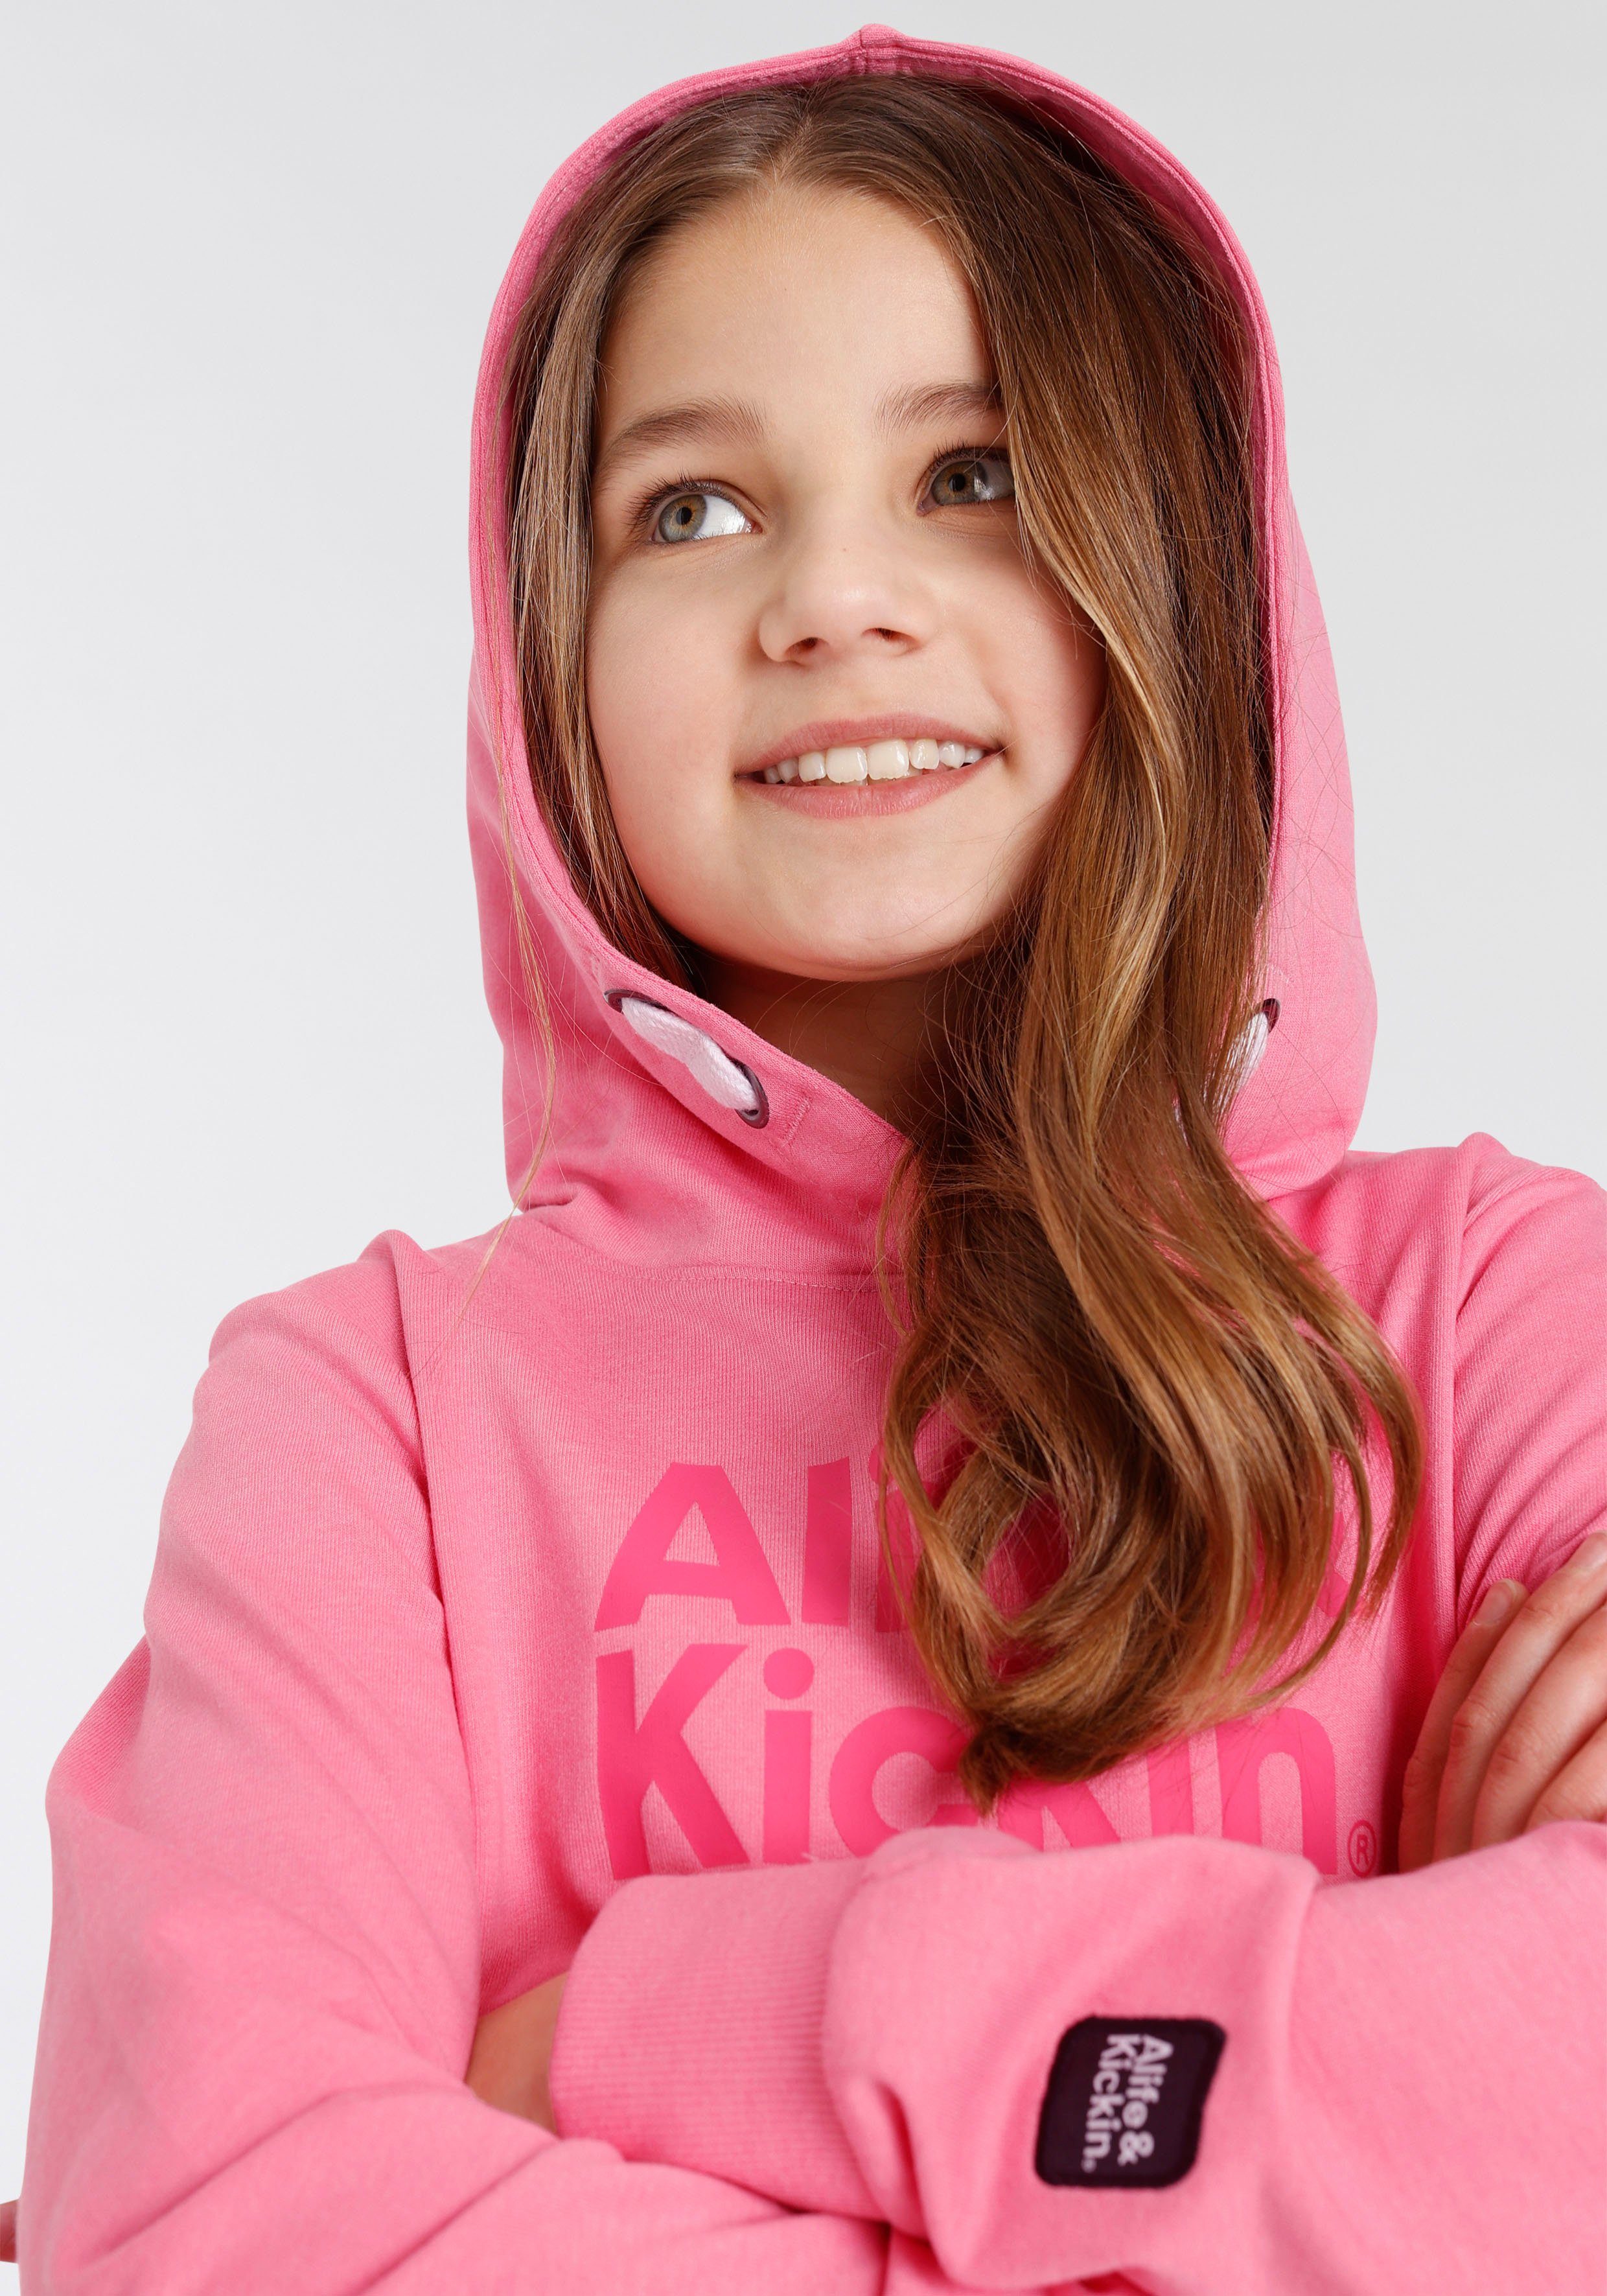 Alife & Alife Druck MARKE! Kickin für Kids. Kickin & NEUE Logo Kapuzensweatshirt mit